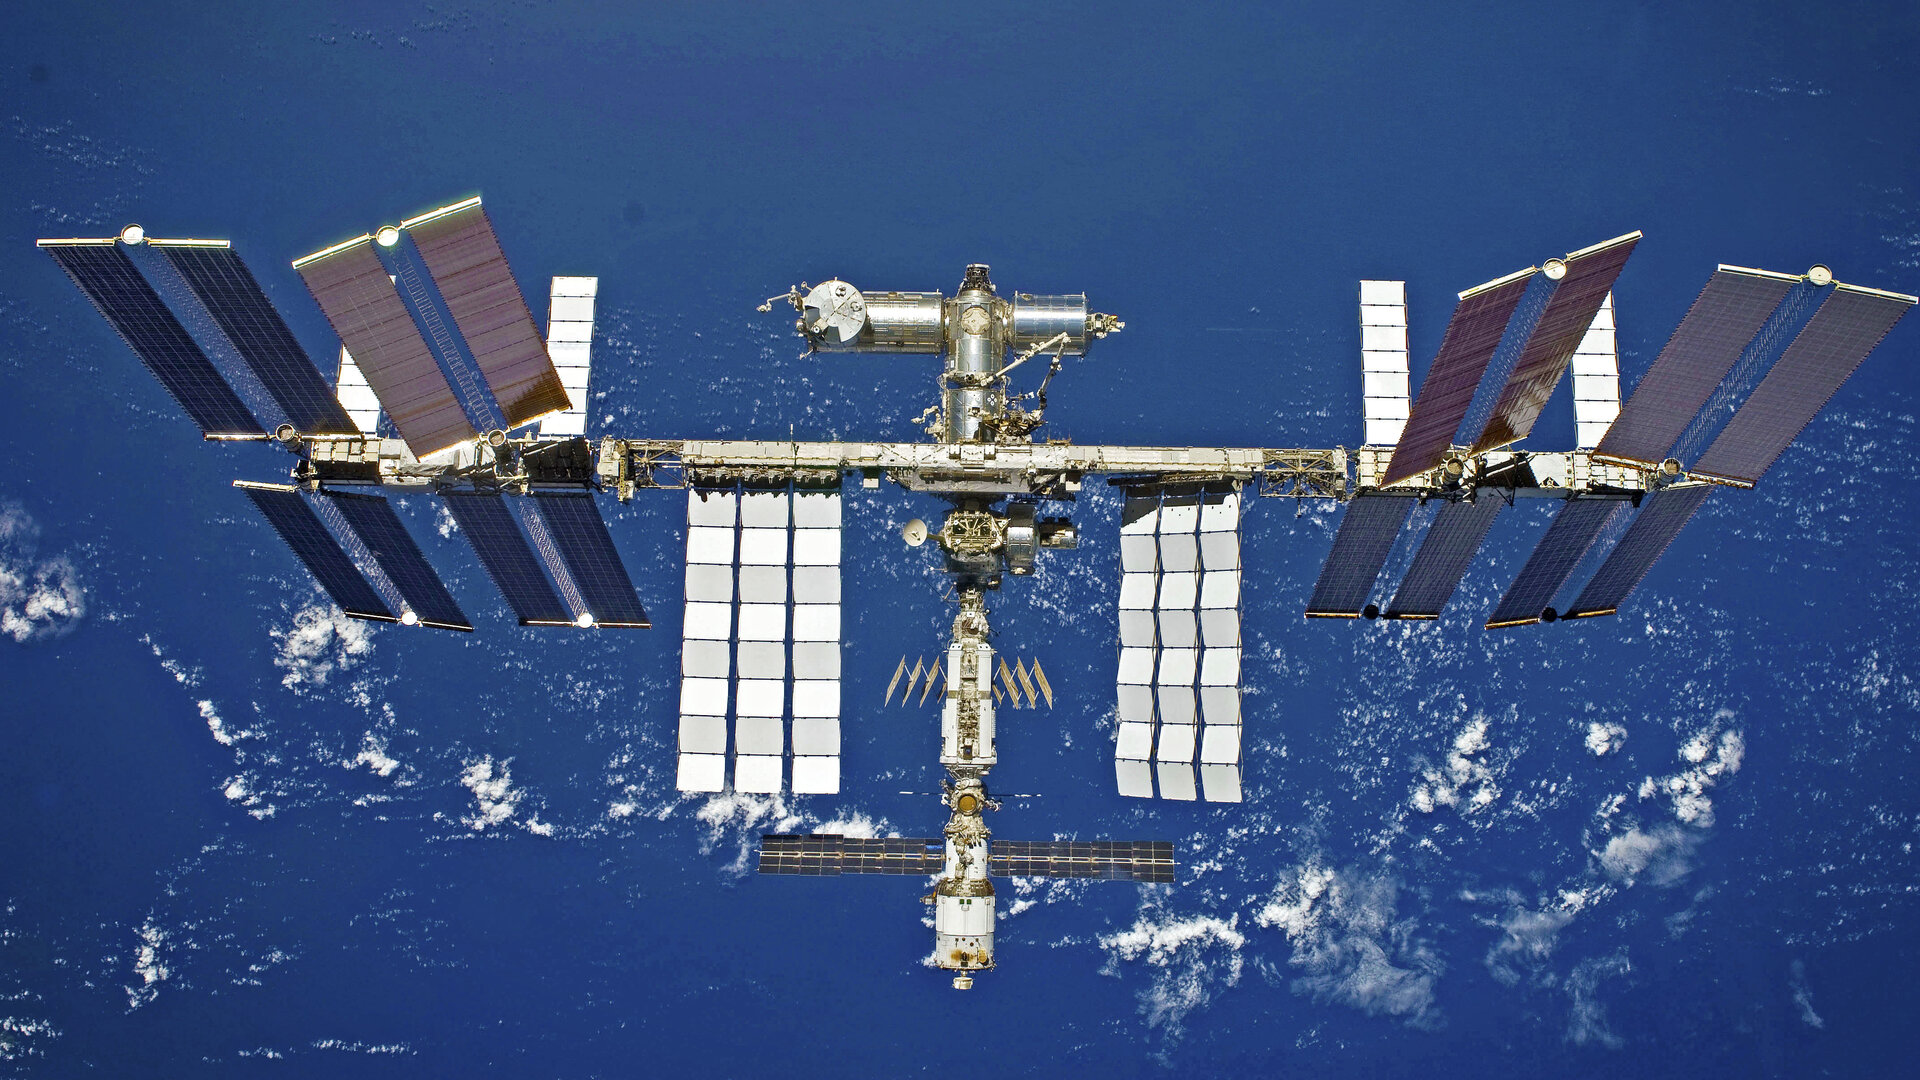 Midzynarodowa Stacja Kosmiczna dostanie modu komercyjny. Jego dostawc bdzie firma Axiom